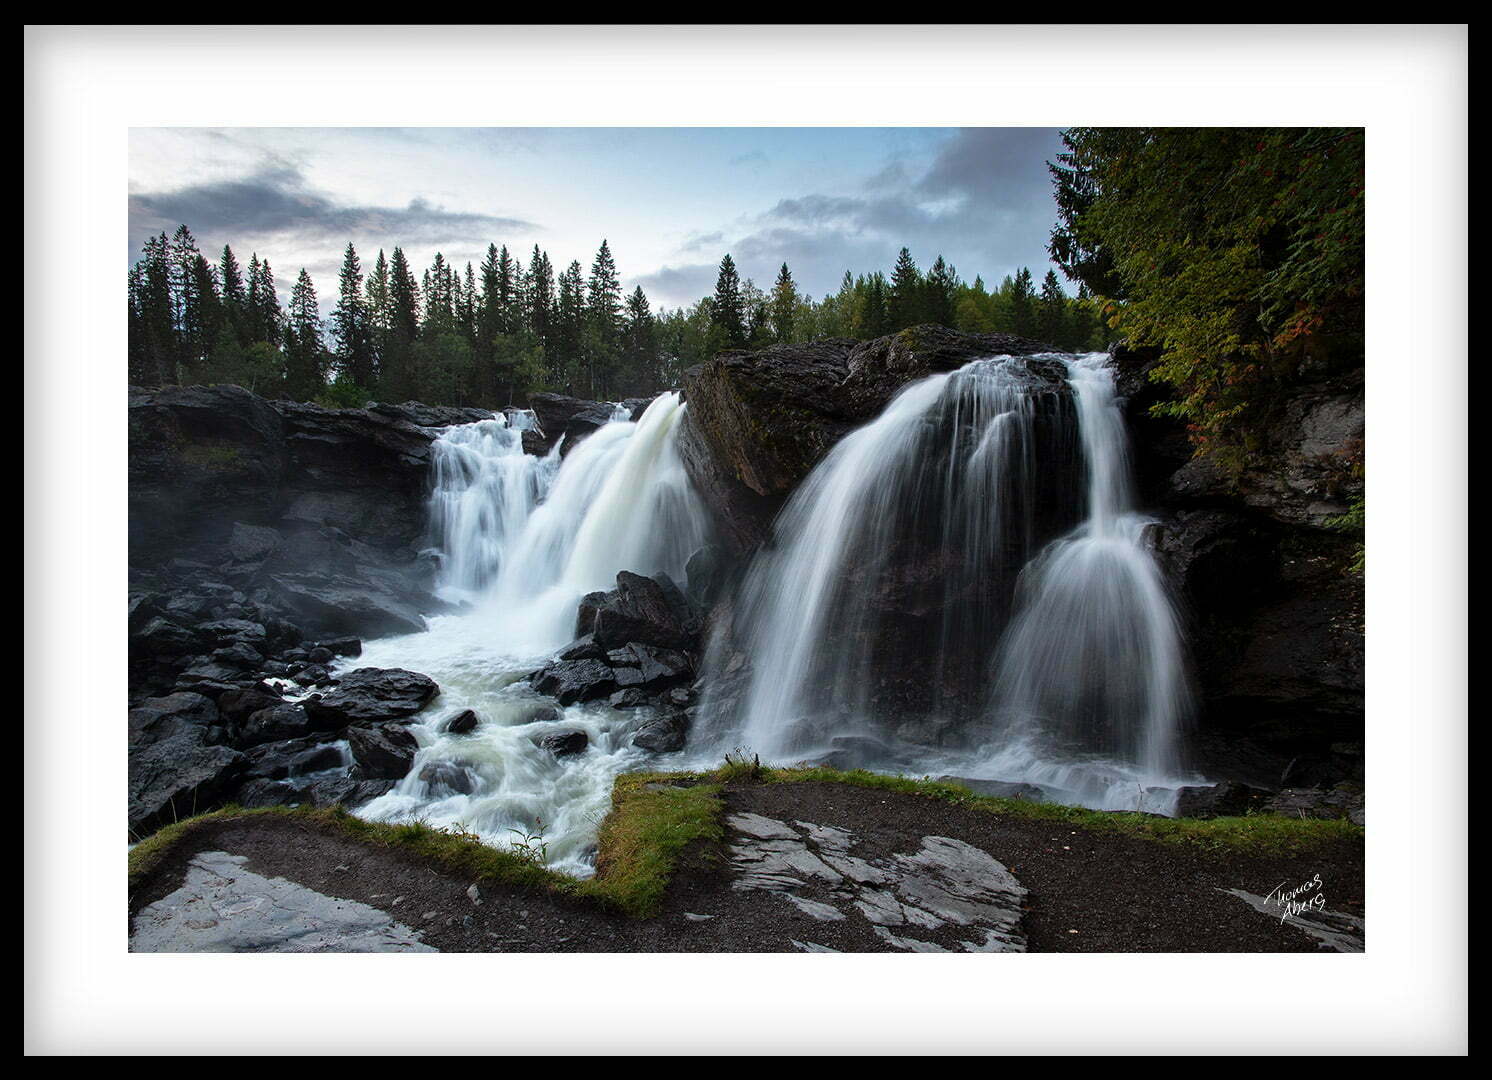 Tavla 00054 Ristafallet vattenfall Åre